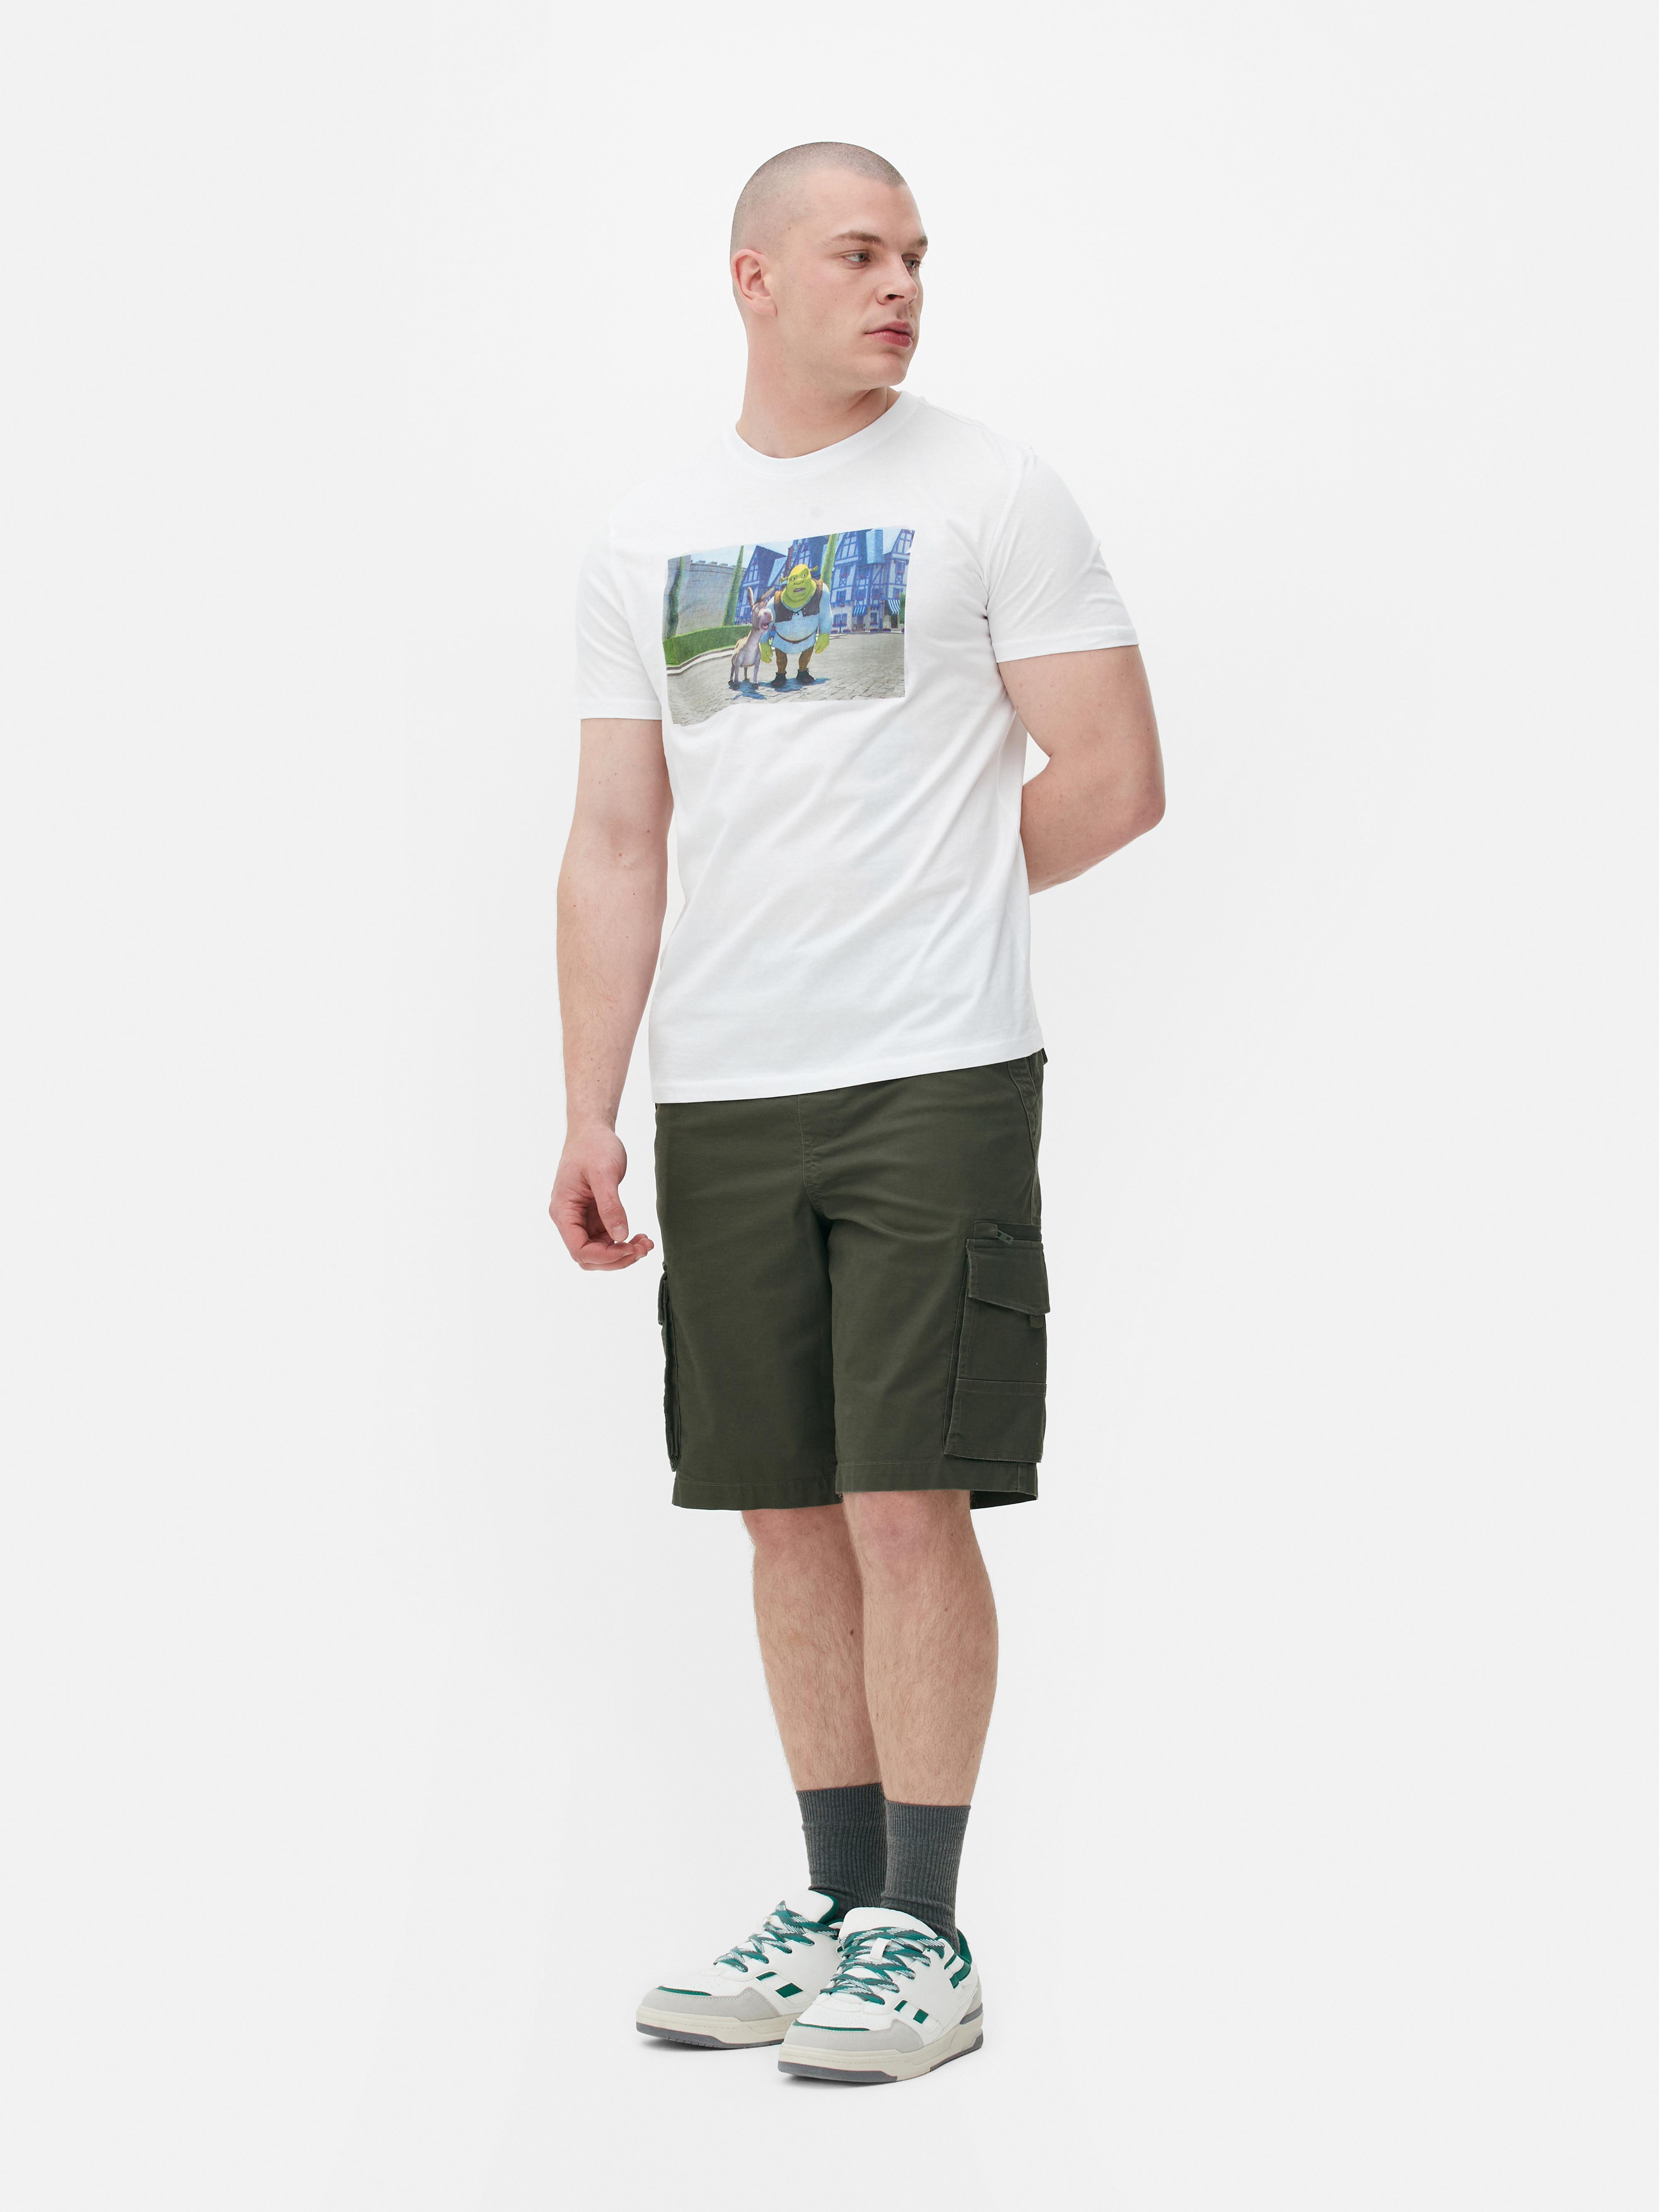 Shrek Graphic T-shirt